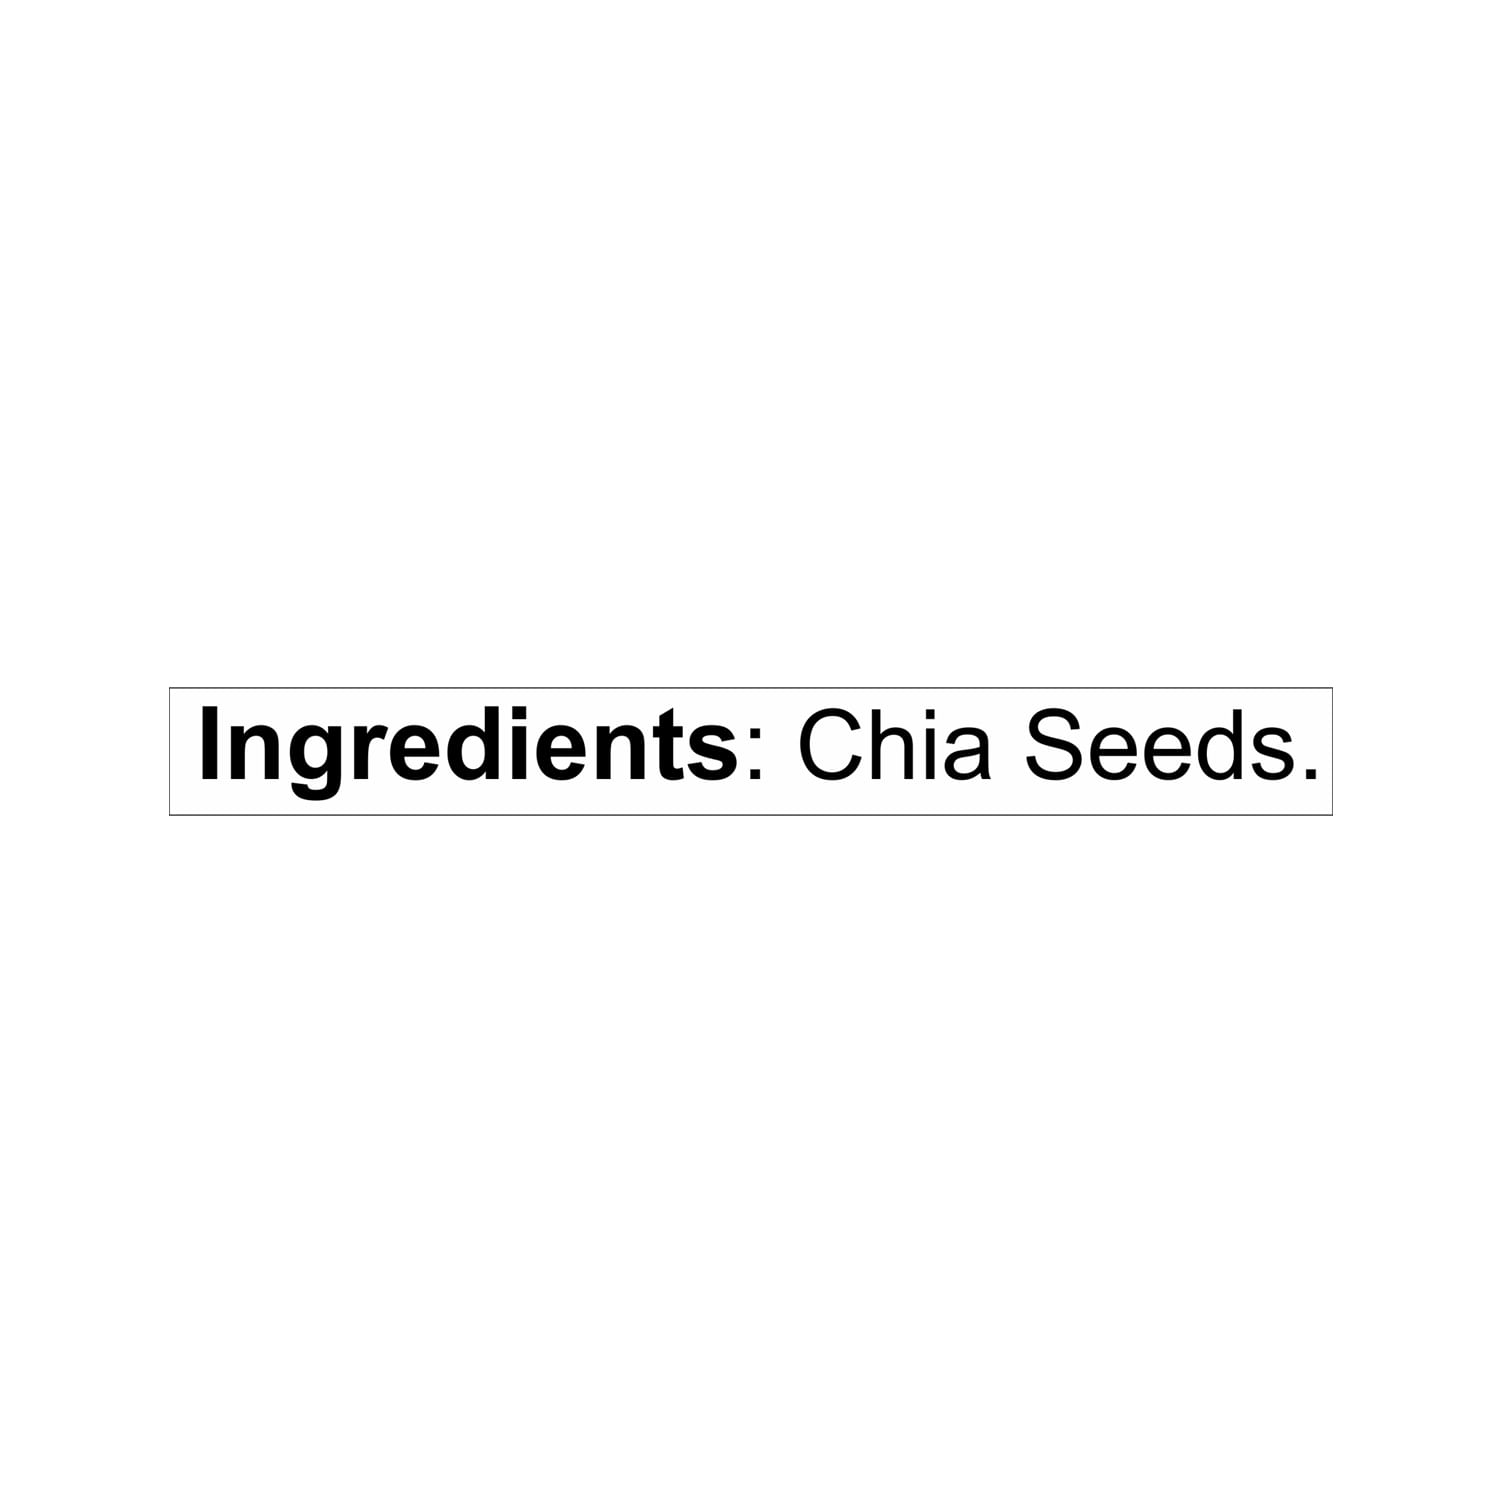 Nutraj Chia Seeds 600g (3 X 200g)